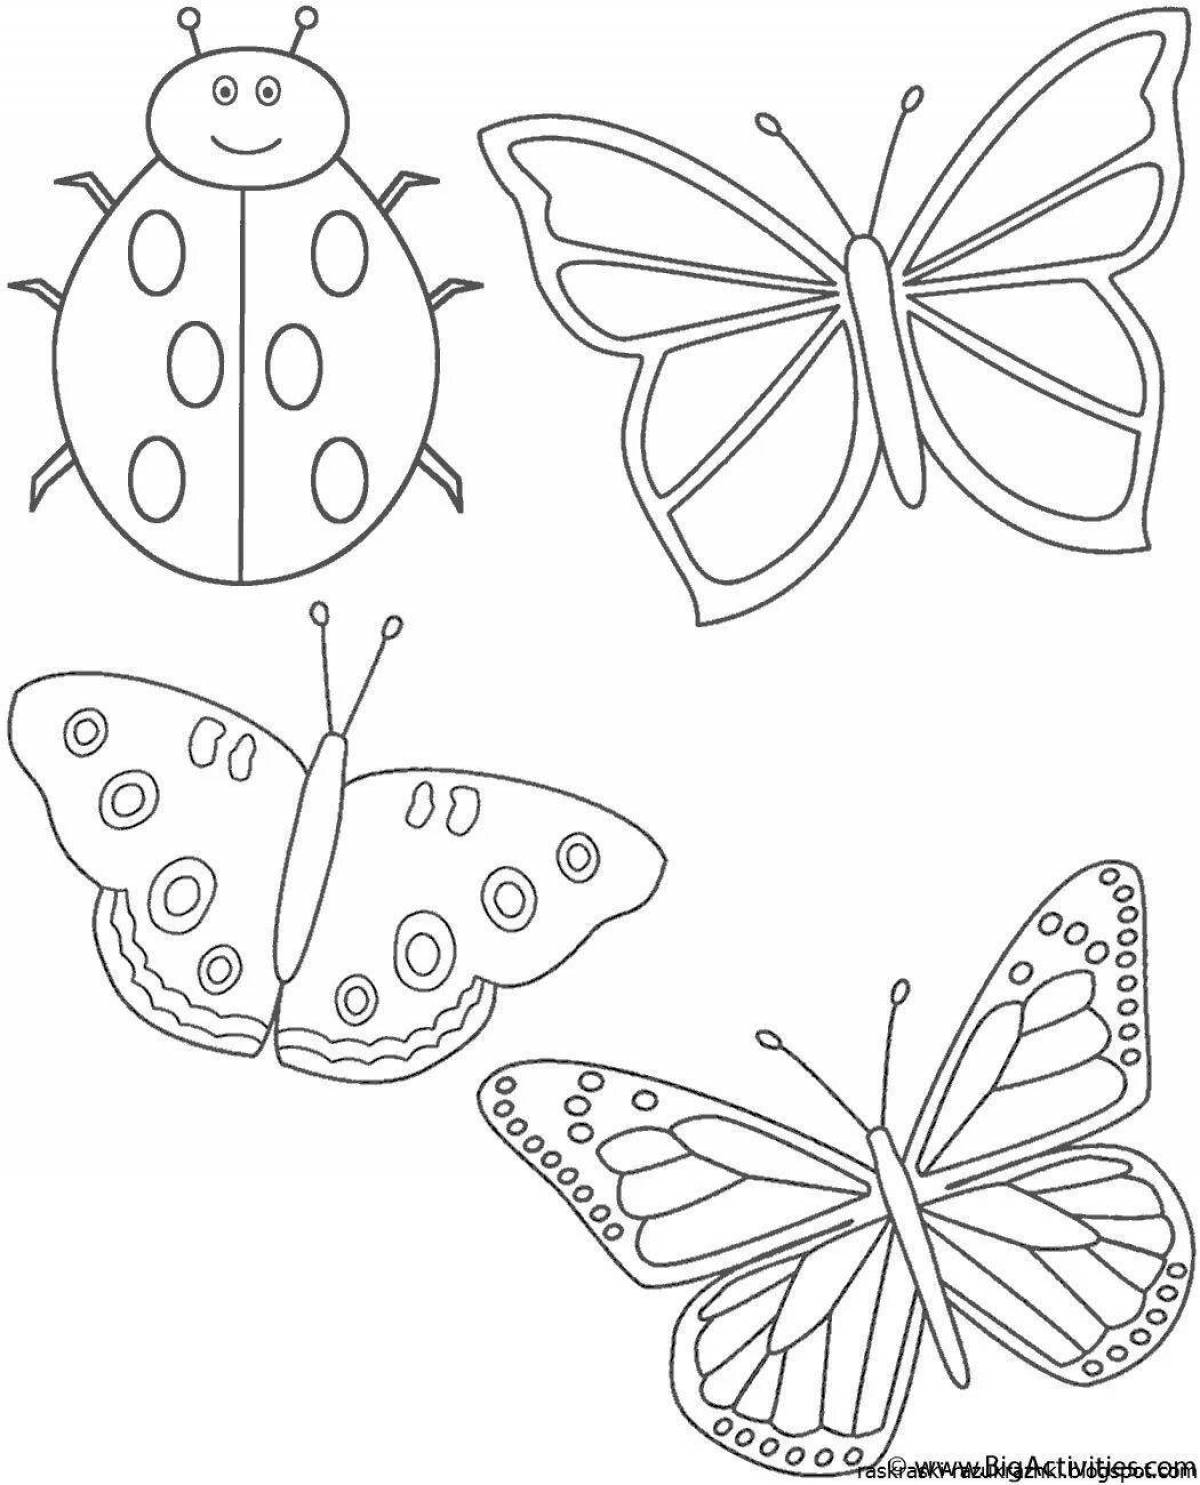 Раскраски для детей 4 5 бабочки. Рисунки для раскрашивания. Бабочка раскраска для детей. Раскраска для малы бабочка. Насекомые. Раскраска.